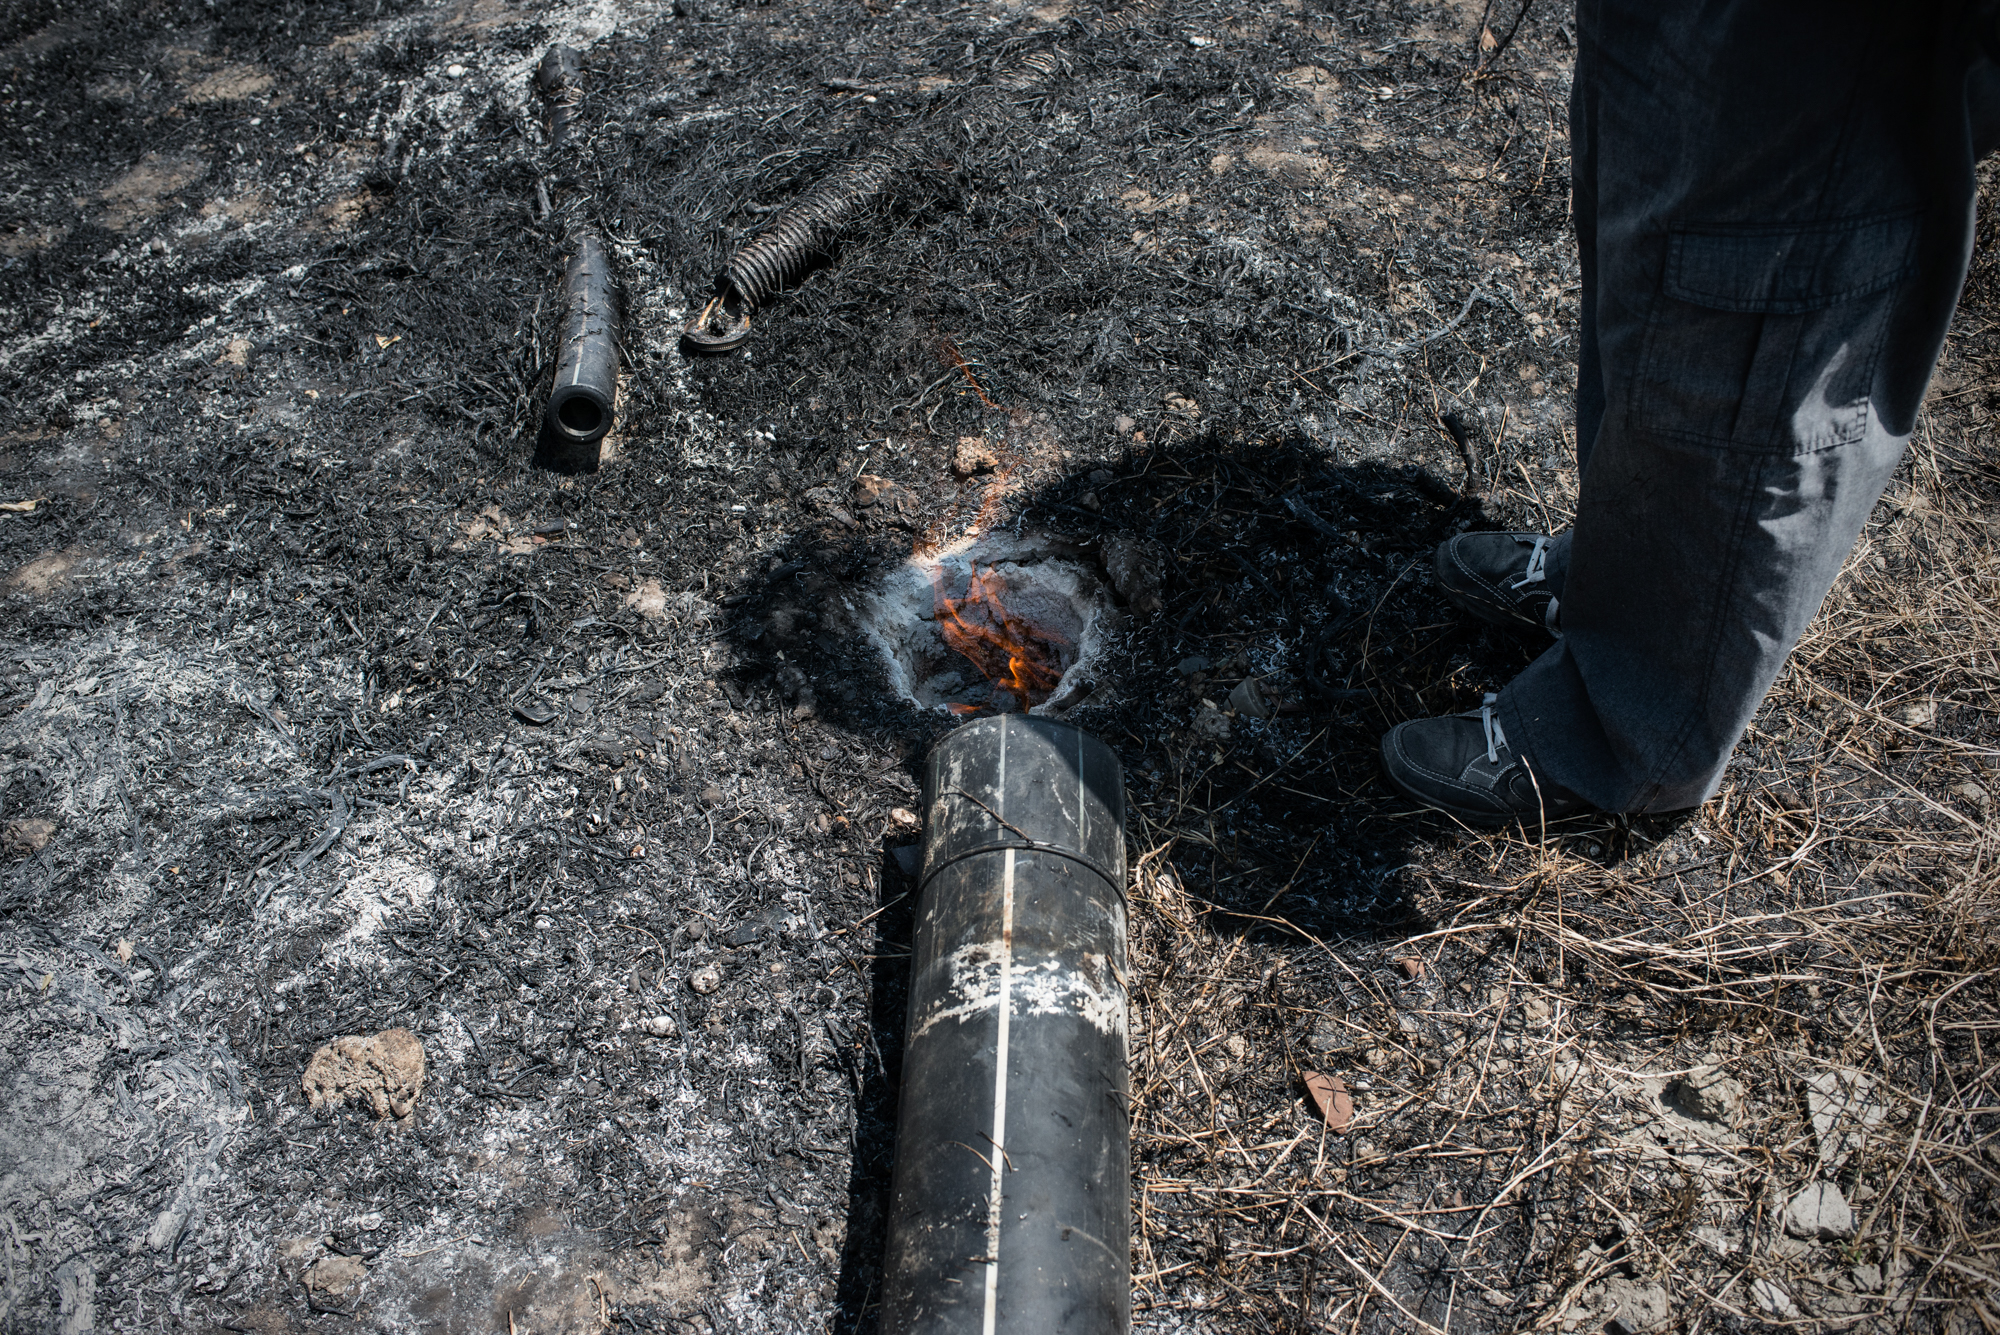  Discarica  Novambiente , Giugliano, (NA), 2015. Le perforazioni nel terreno per la misurazione dei gas che fuoriescono dalla discarica causano esalazioni tossiche da rifiuti chimici industriali e processi di autocombustione.&nbsp; 